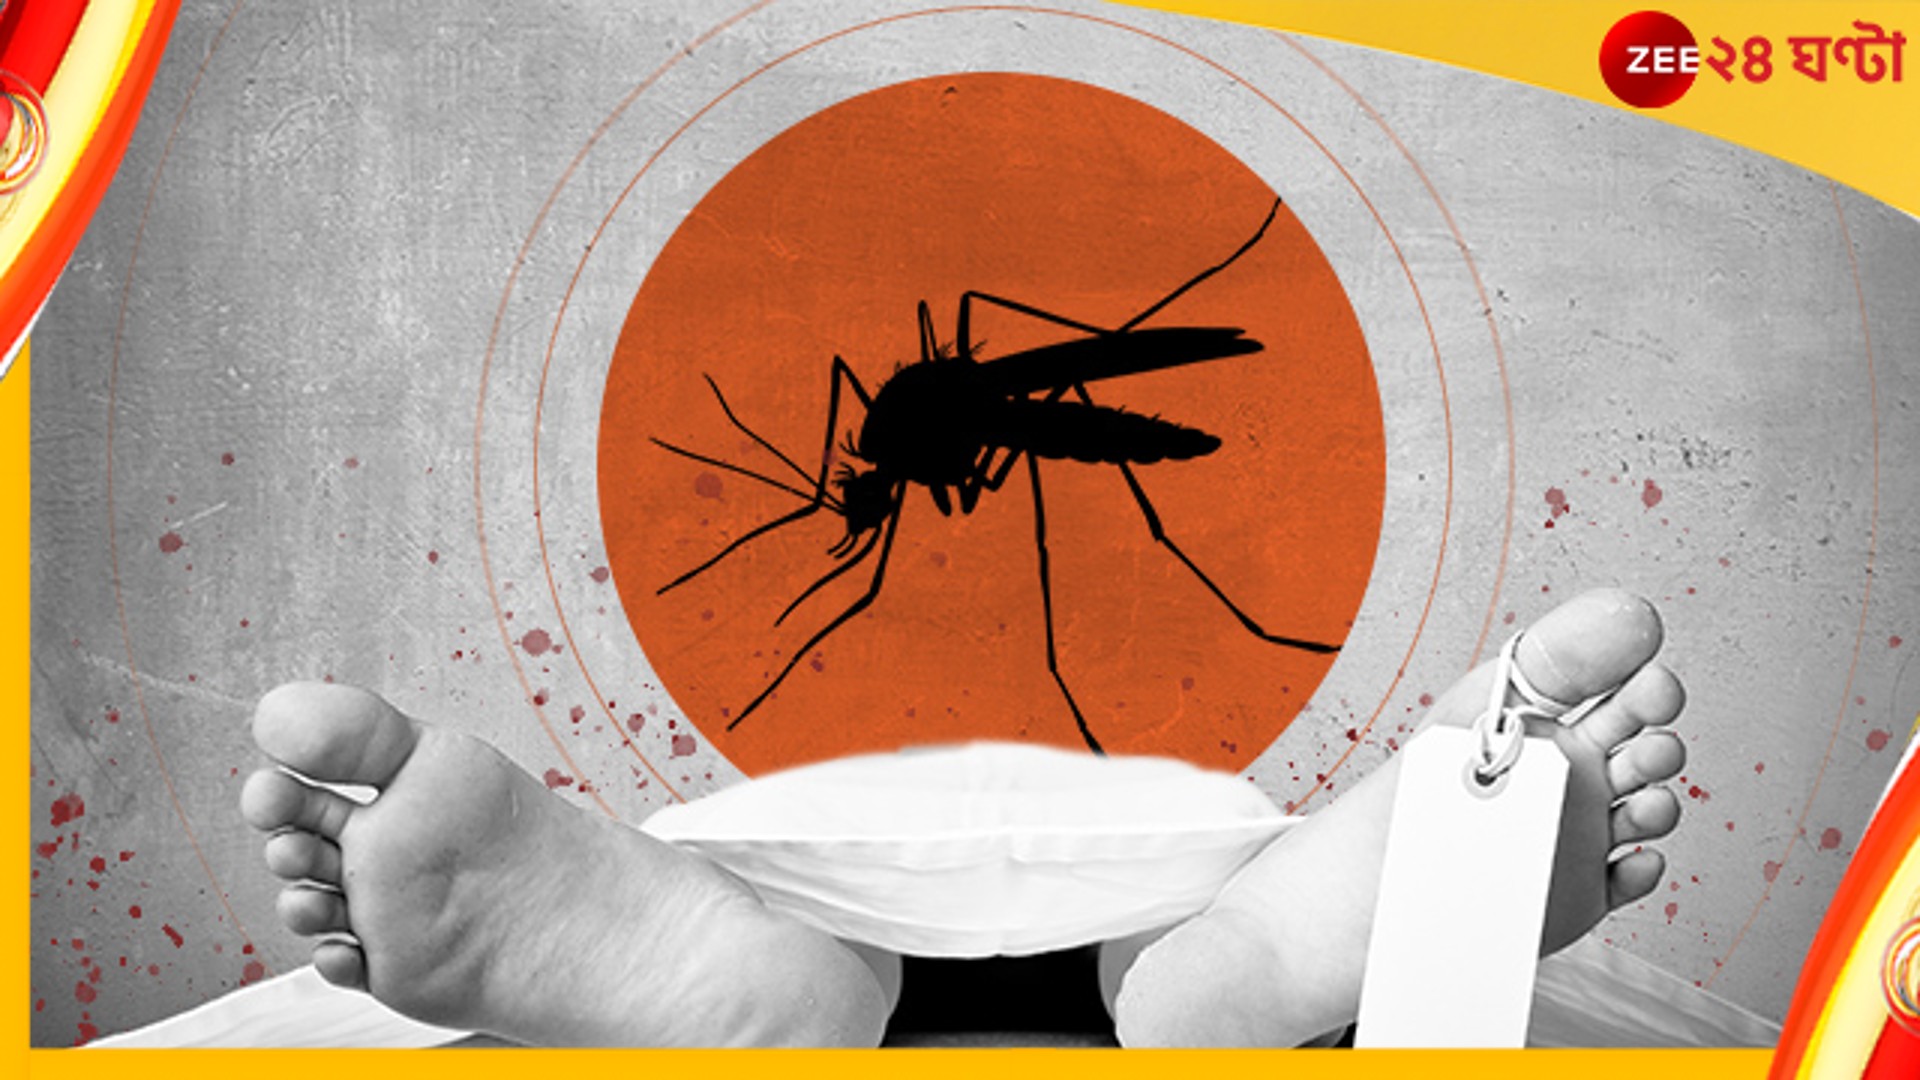 Dengue Death: ফের ডেঙ্গু আক্রান্তের মৃত্যু বেলেঘাটা আইডি হাসপাতালে! চিন্তা বাড়ছে রাজ্যে